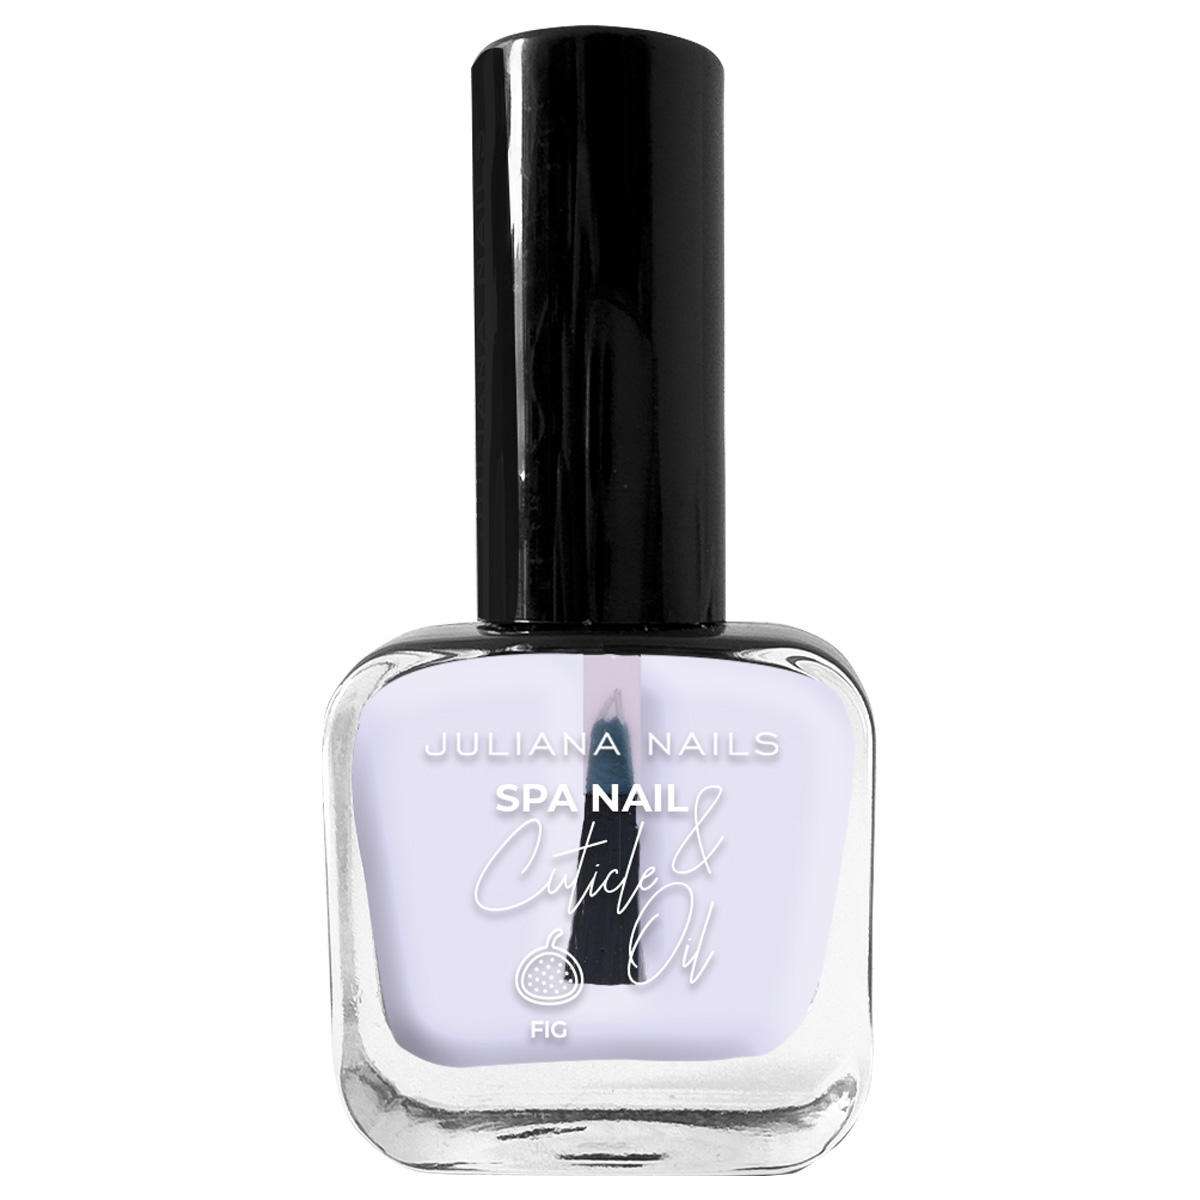 Juliana Nails SPA Nail & Cuticle Oil  - 1